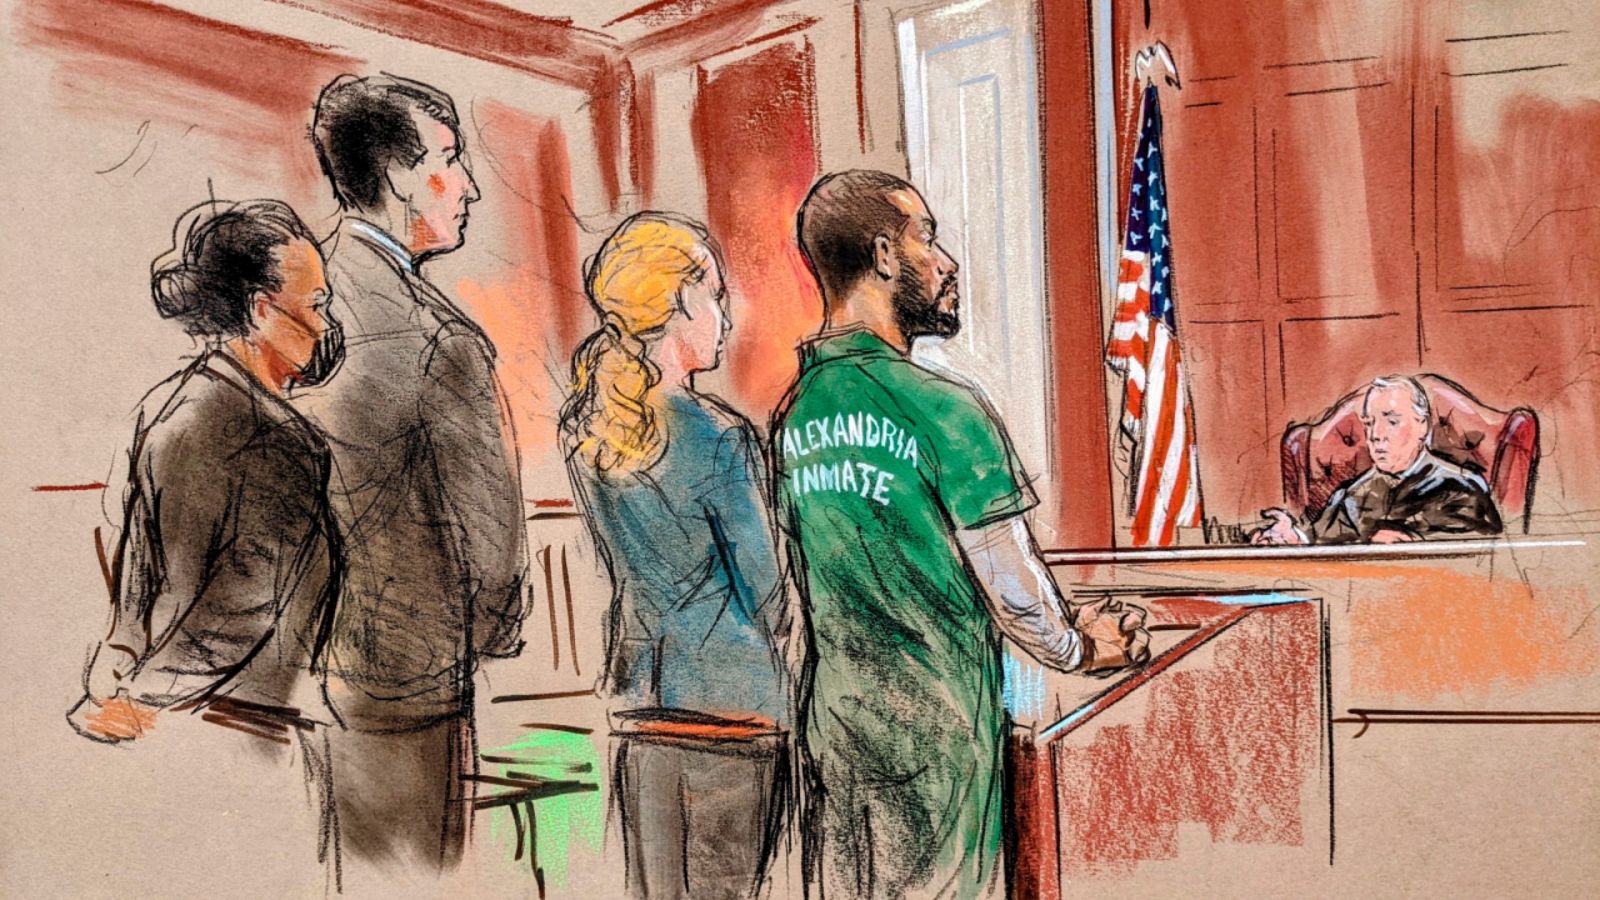 Un dibujo de la sesión judicial en la que el yihadista Alexanda Kotey (traje verde) ha sido condenado a cadena perpetua.